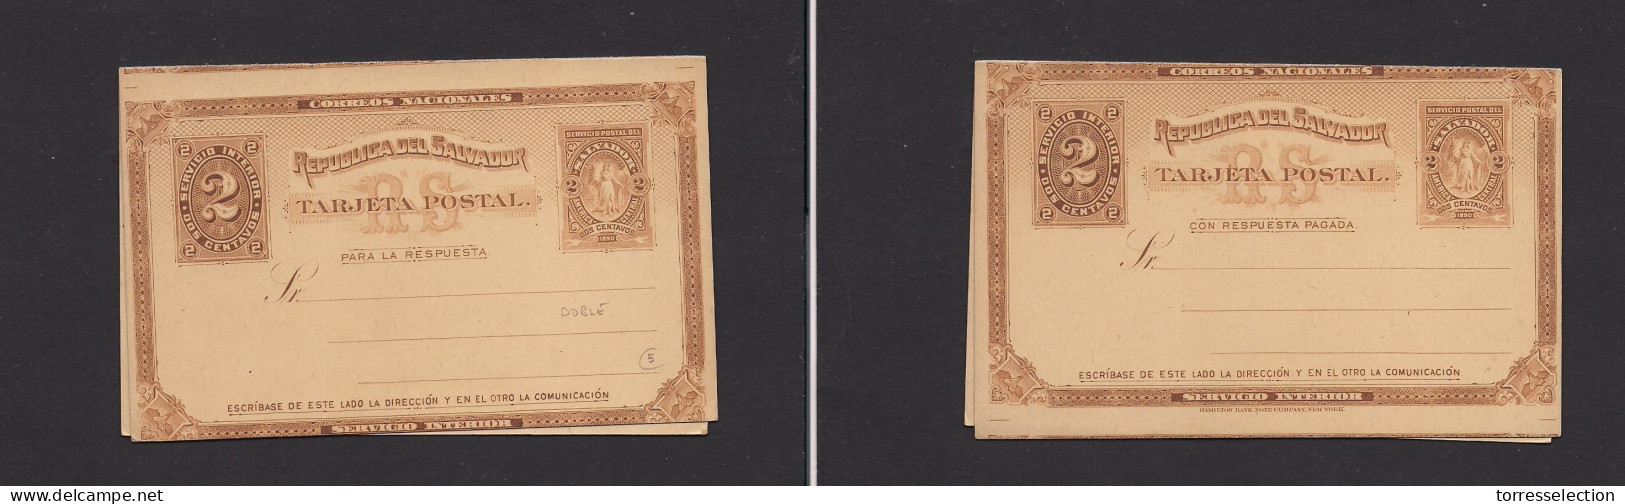 SALVADOR, EL. Salvador - Cover - 2c Brown Mint Early Doble Stat Card, Scarce. Easy Deal. XSALE. - El Salvador